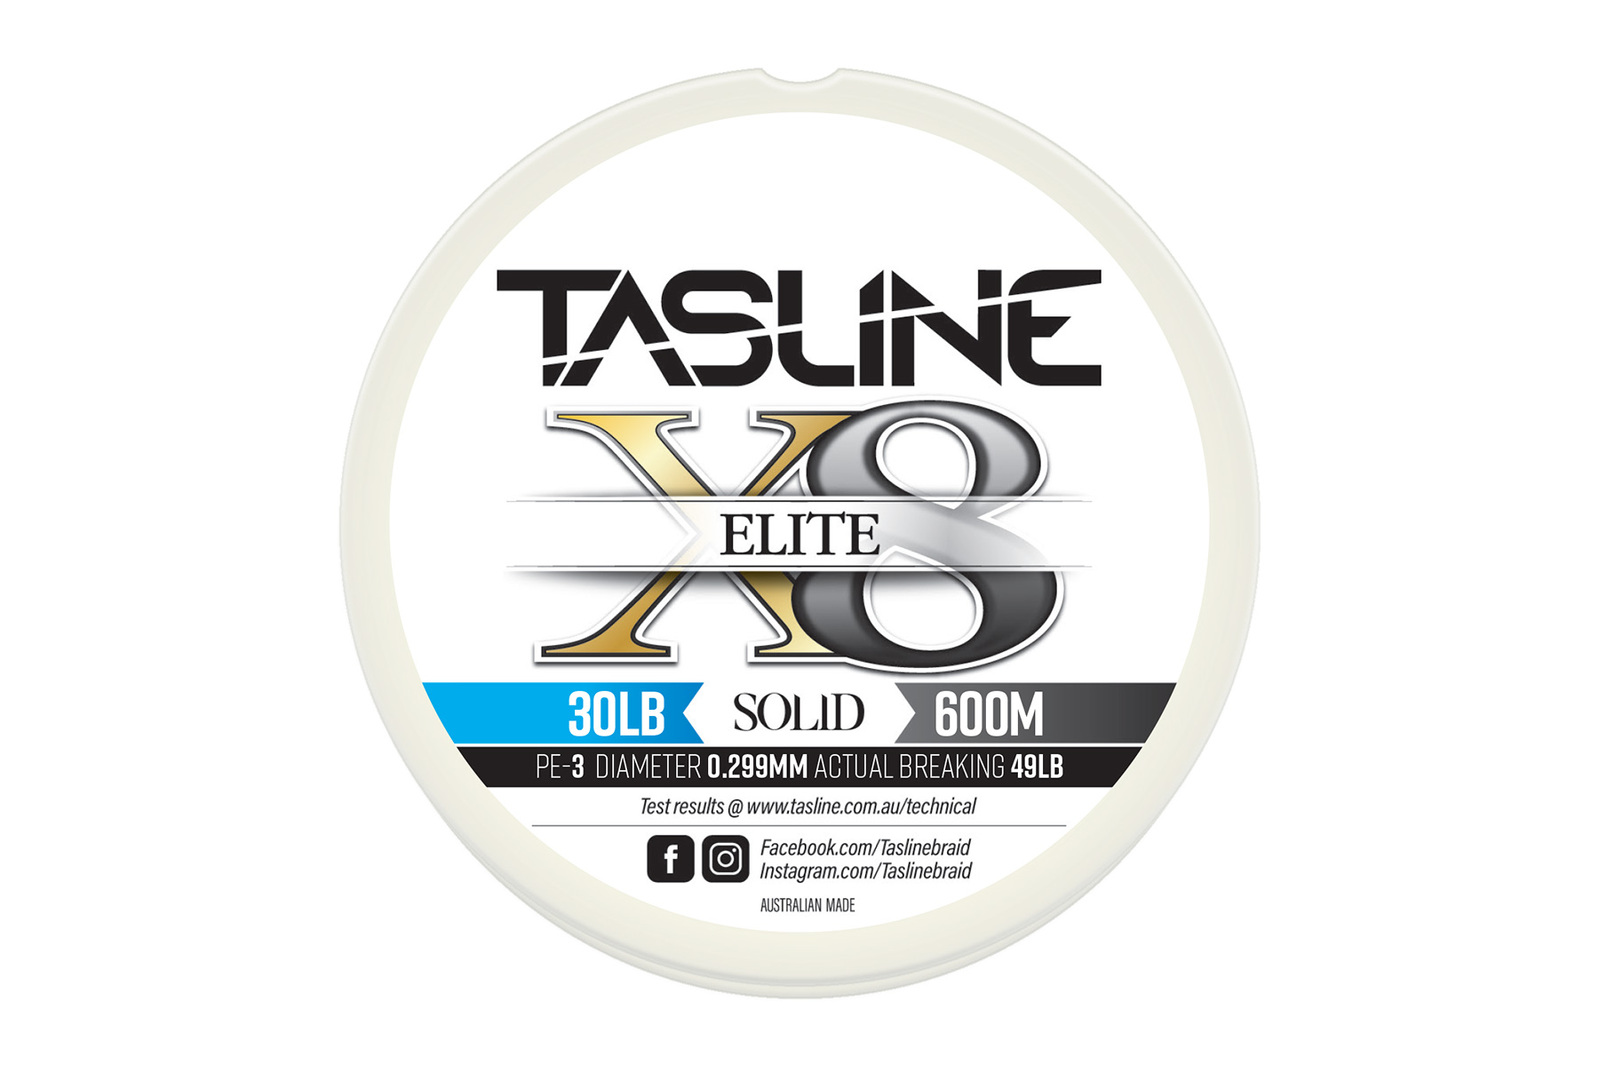 Tasline Elite White 600m Braid Fishing Line #30lb